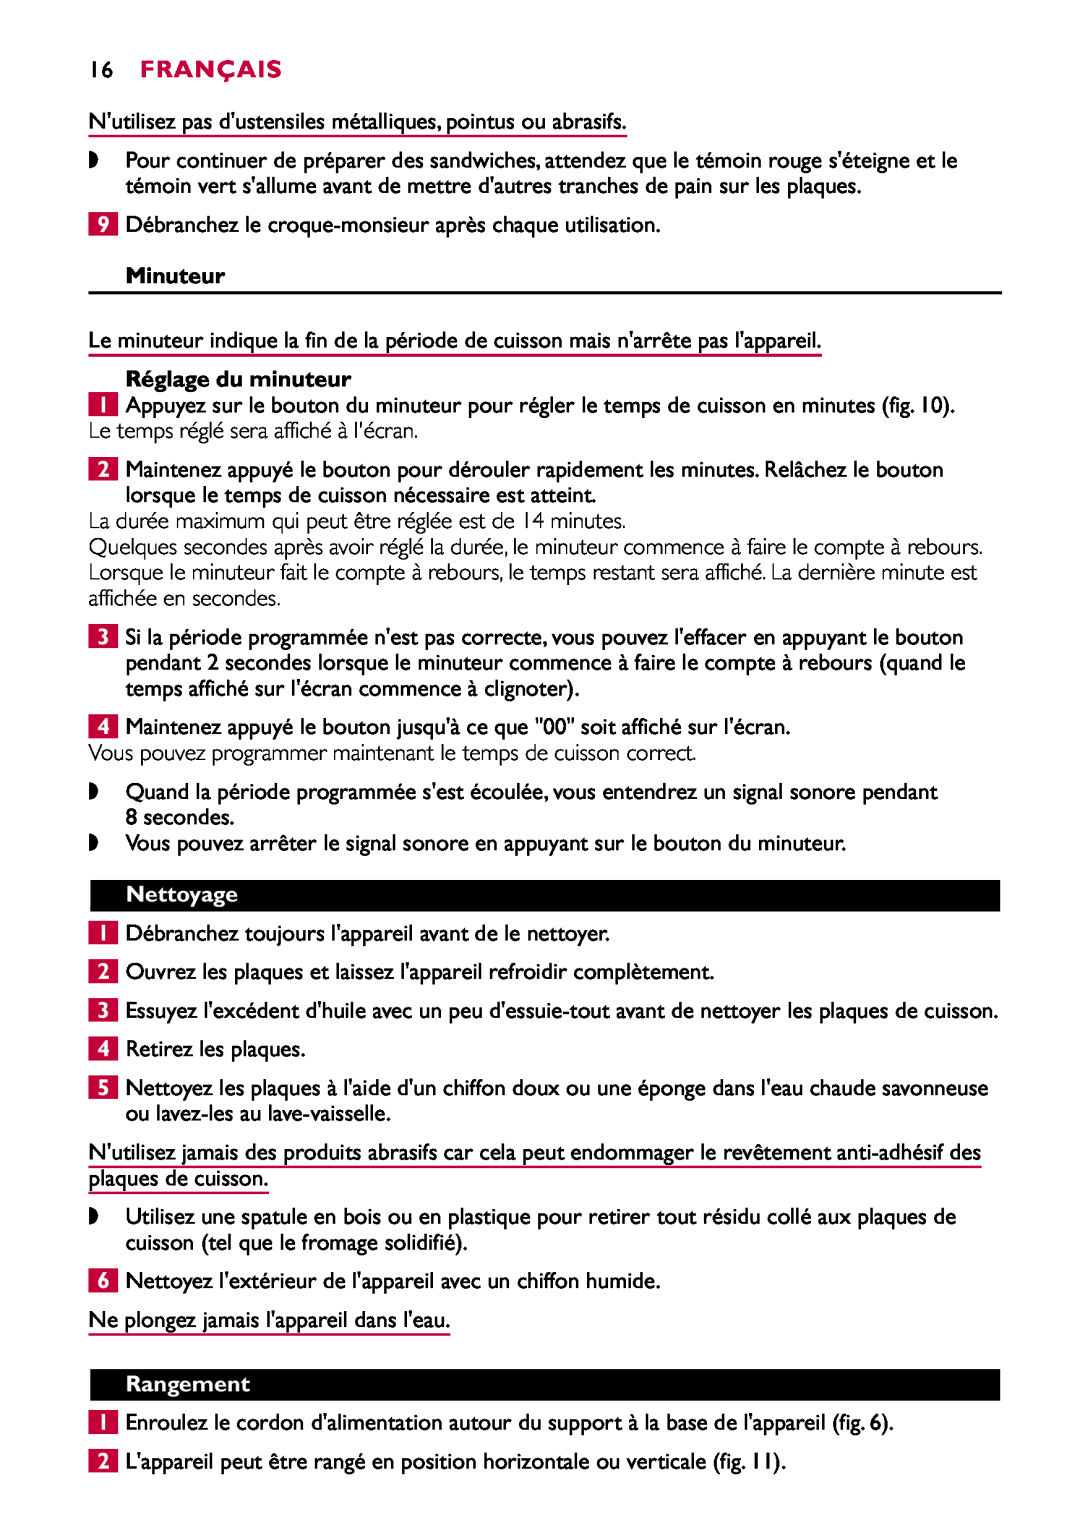 Philips HD2415 manual Français, Minuteur, Réglage du minuteur, Nettoyage, Rangement 